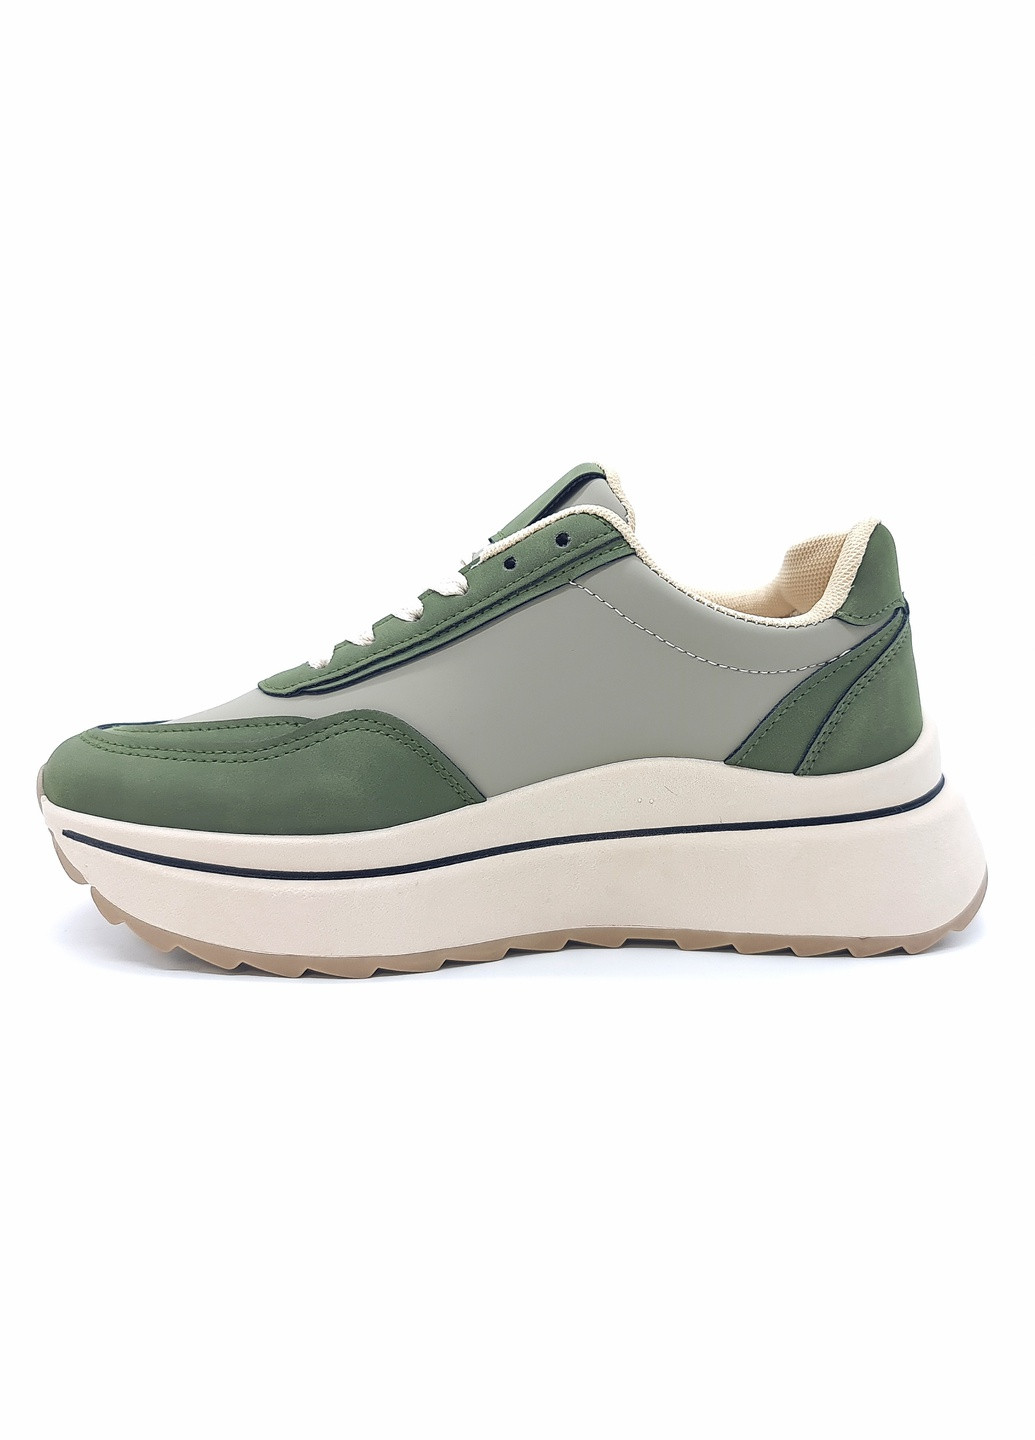 Зеленые всесезонные женские кроссовки зеленые экокожа ba-17-4 23,5 см (р) Bashili